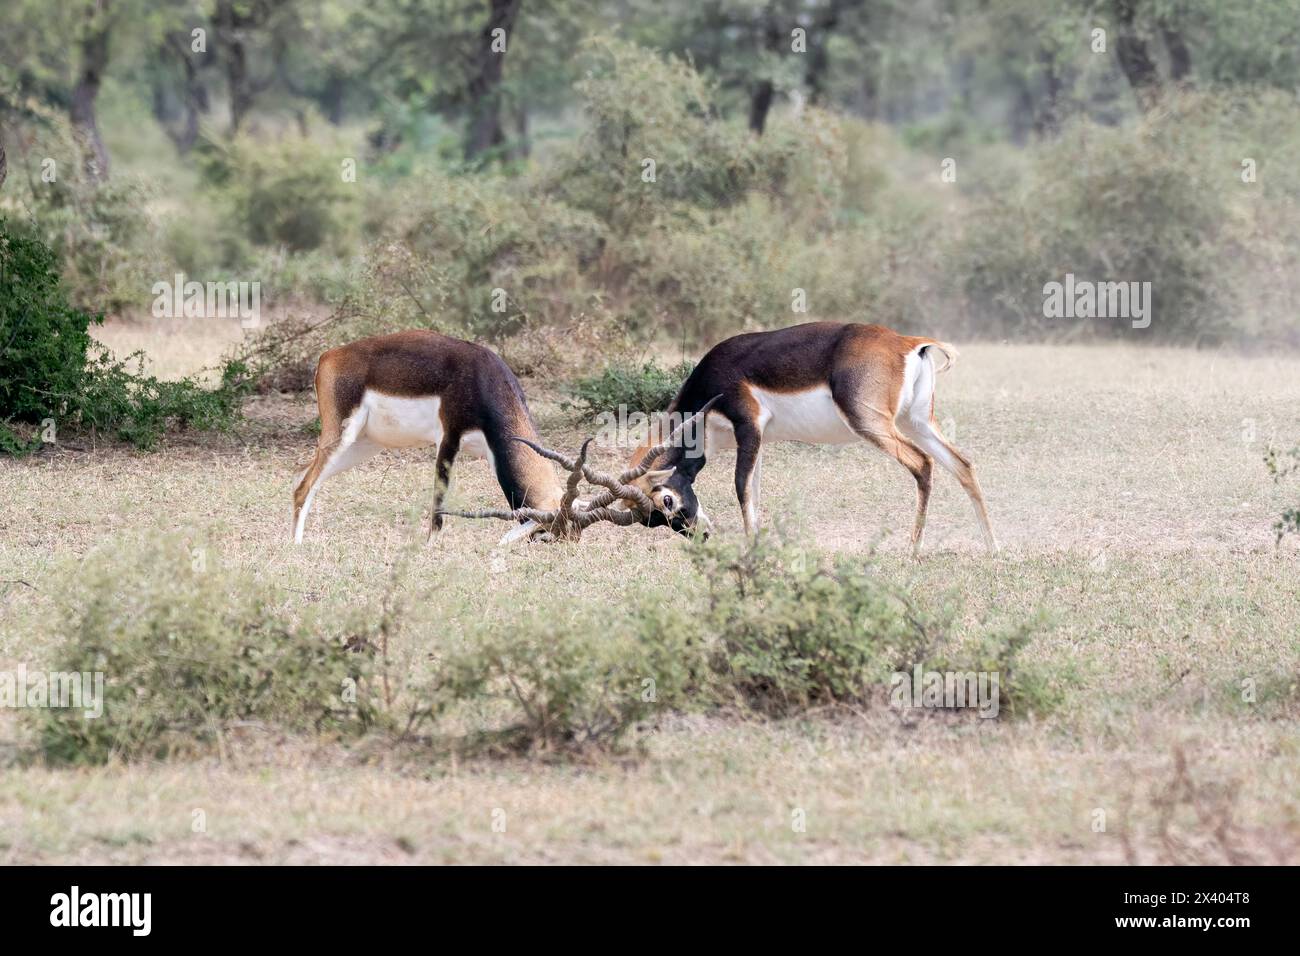 Deux mâles BlackBucks luttant pour la domination et l'accouplement dans le sanctuaire Blackbuck à Tal Chappar, Rajasthan lors d'un safari de la faune Banque D'Images